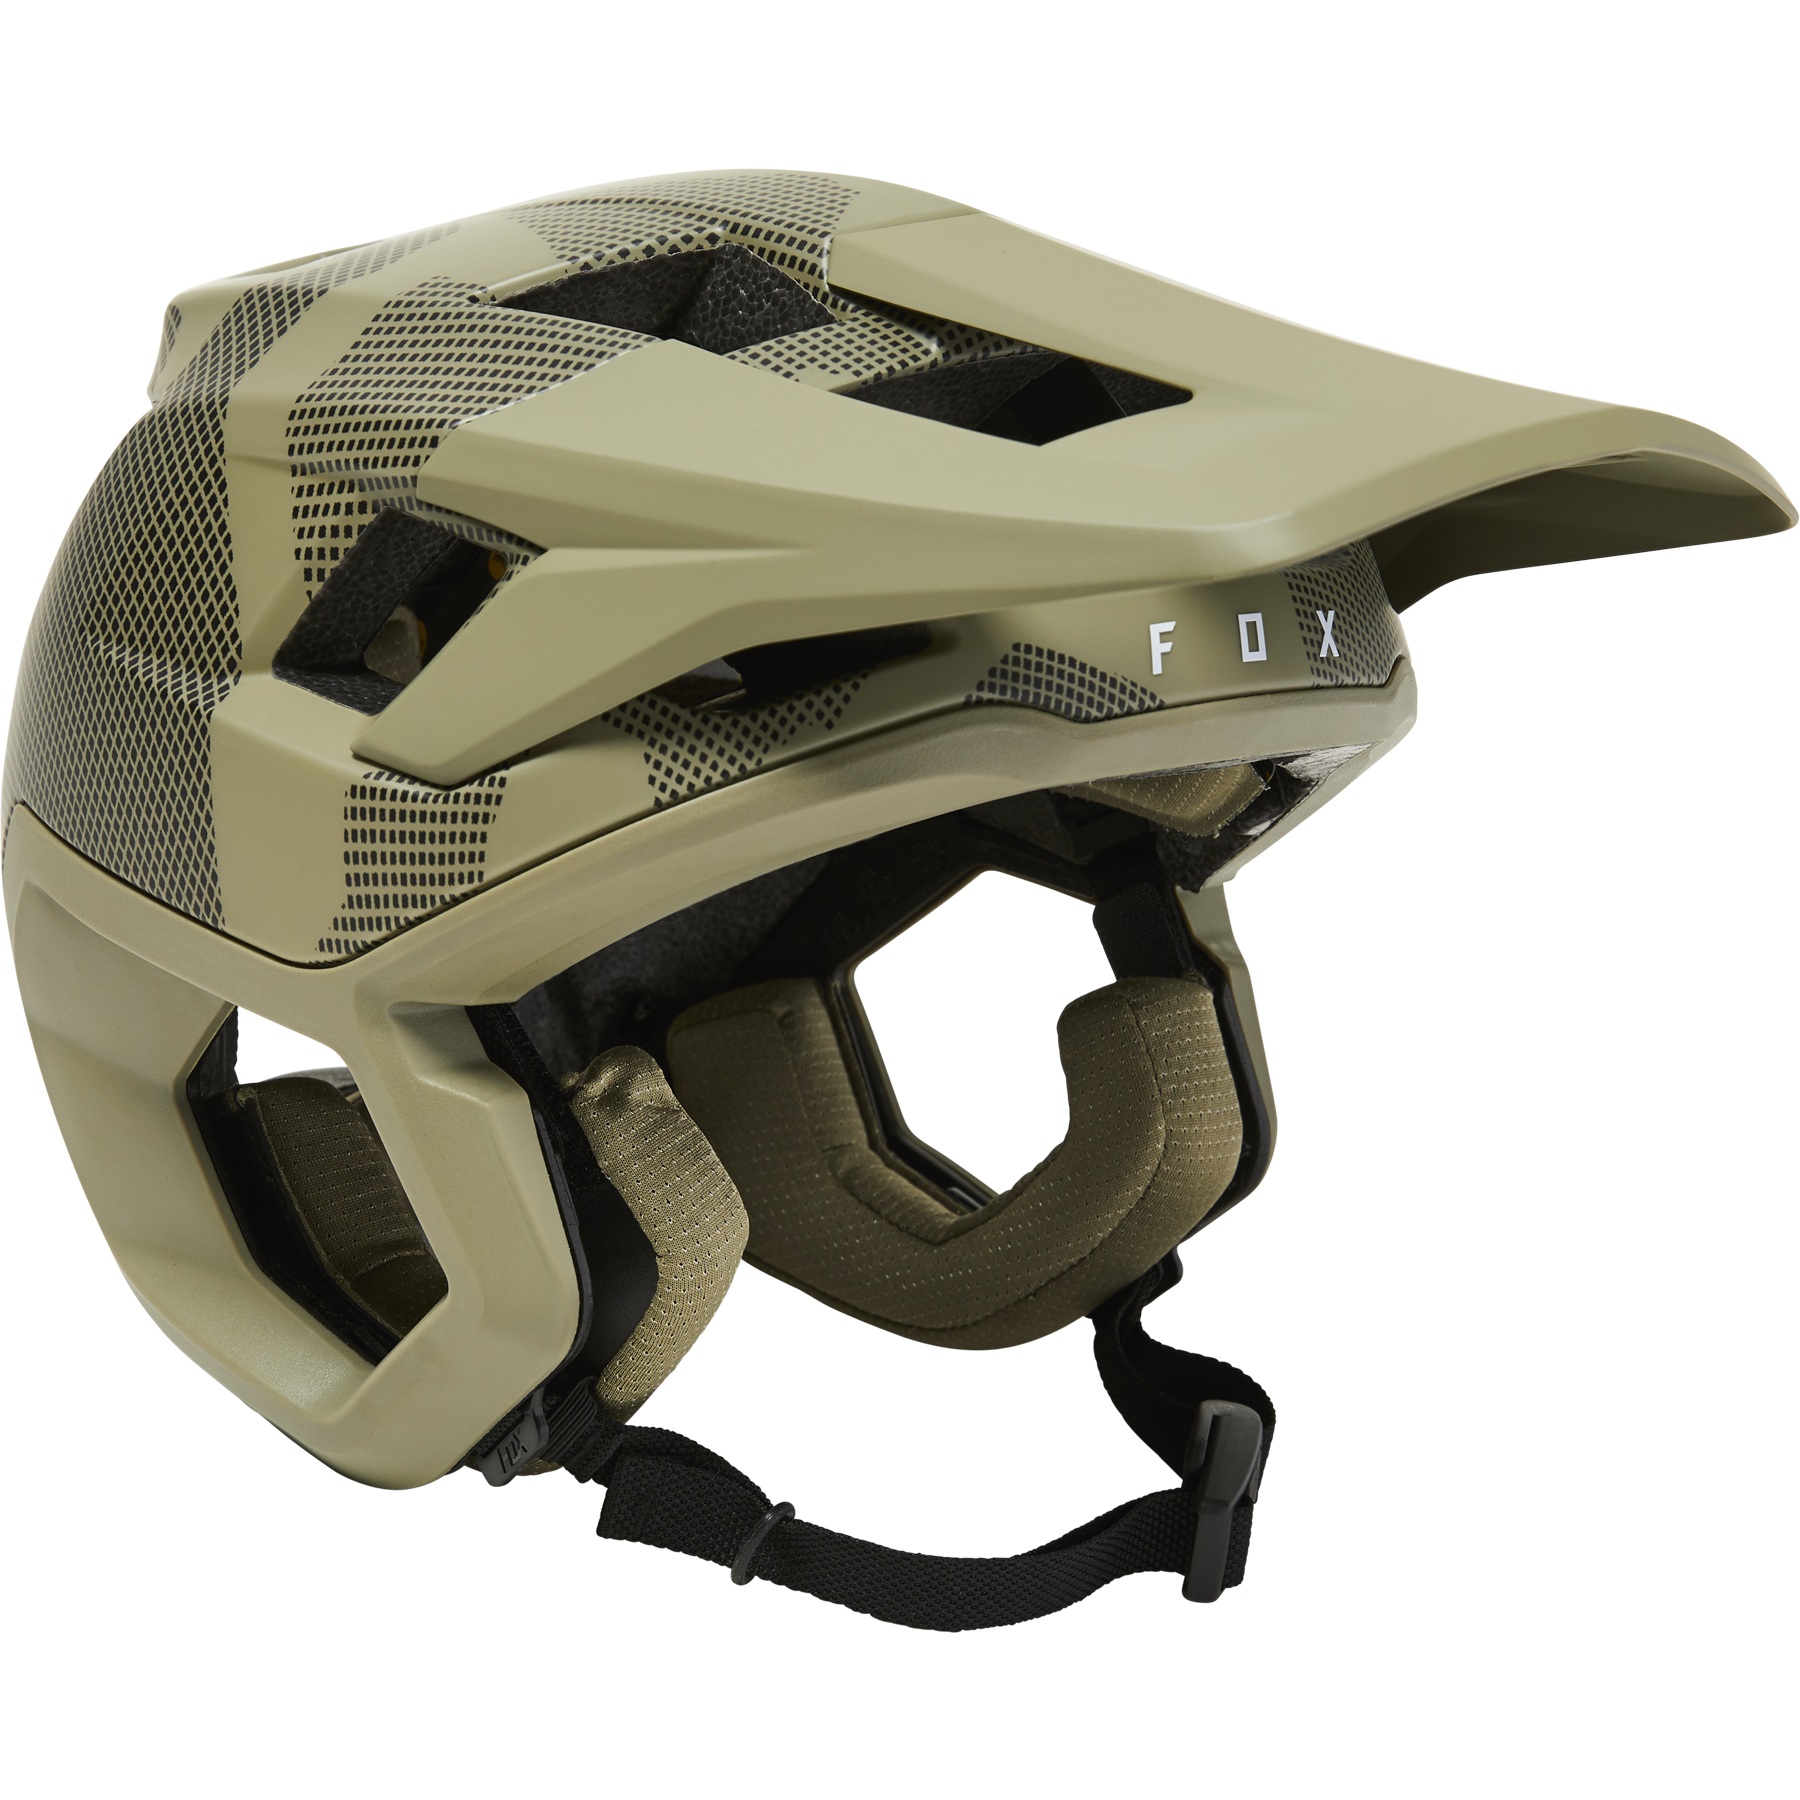 Produktbild von FOX Dropframe Pro Trail Helm - Camo - camo